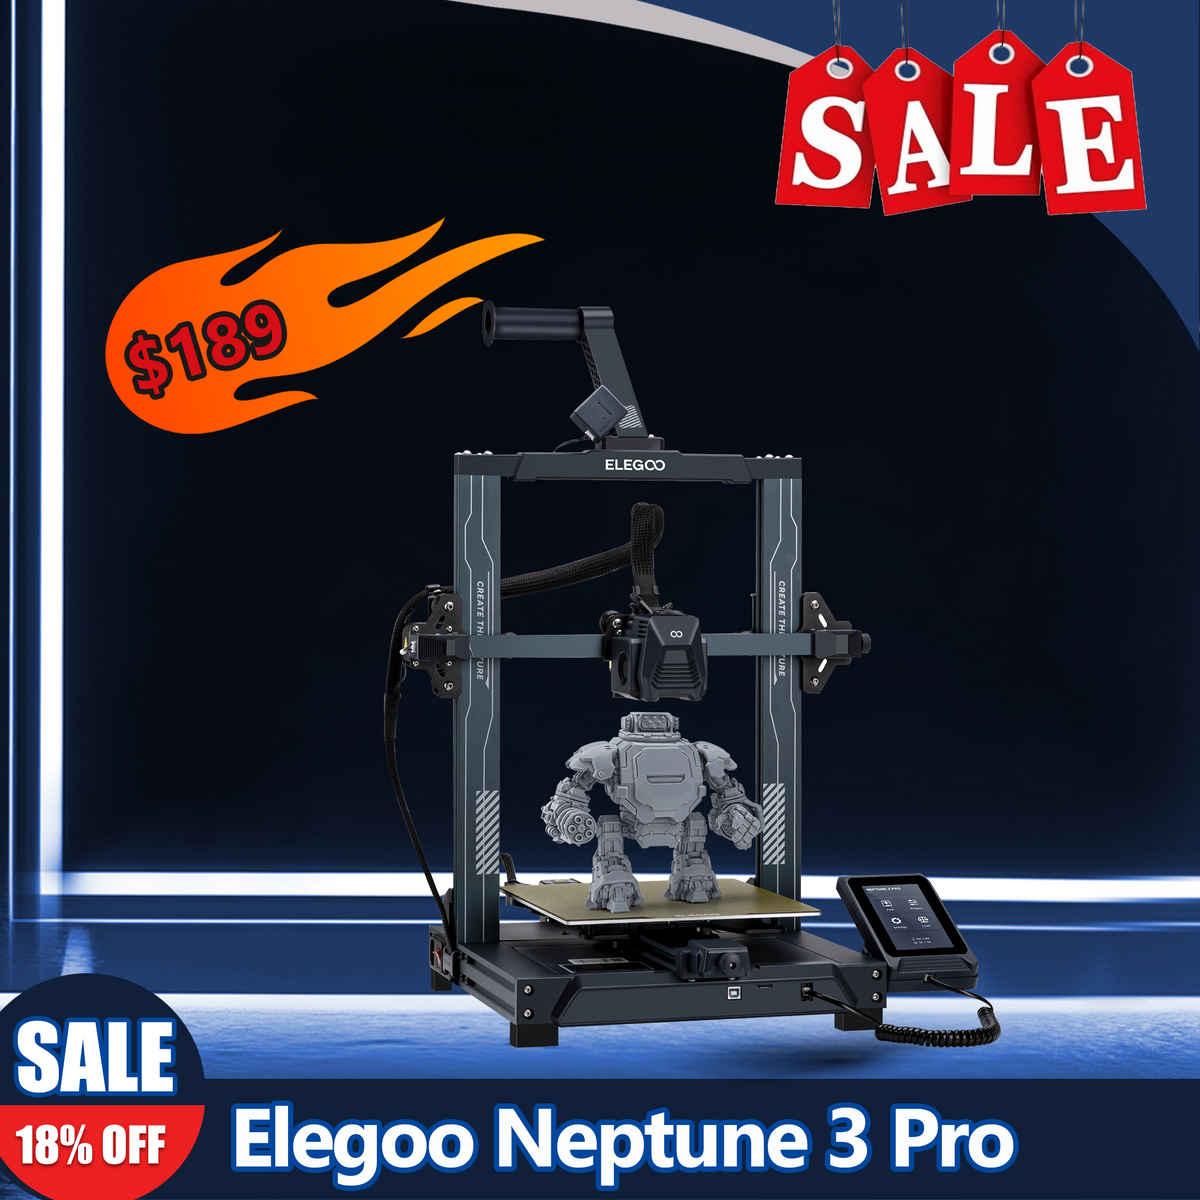 ELEGOO Neptune 3 Pro FDM 3D-Drucker mit einem Bauvolumen von 225 x 225 x 280 mm³